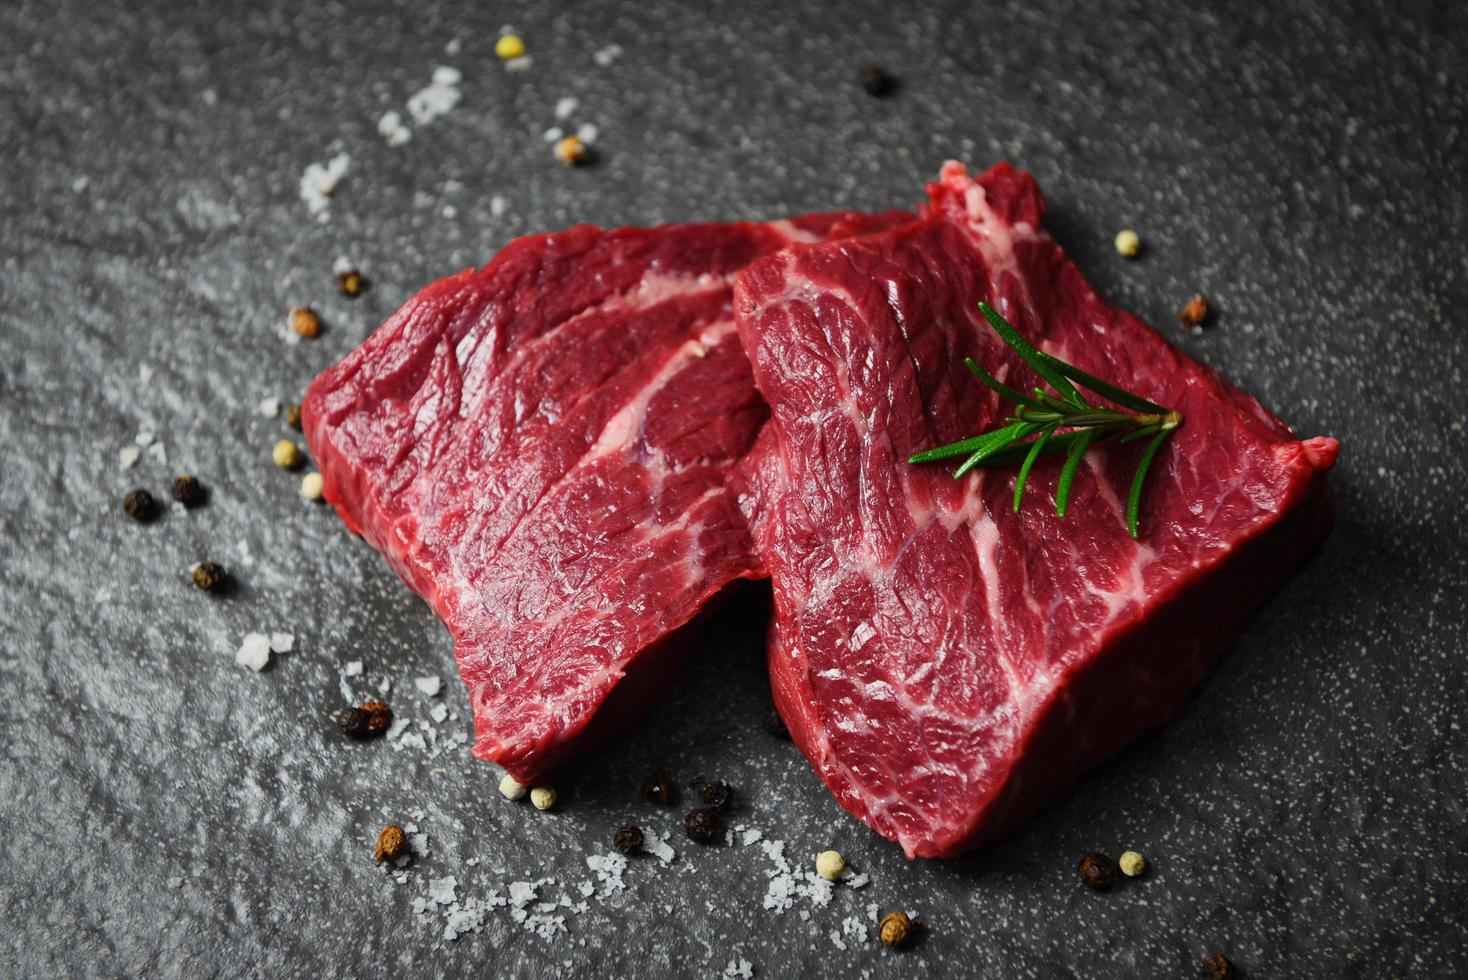 rauwe biefstuk met kruiden en specerijen - vers vlees rundvlees gesneden op zwarte achtergrond foto